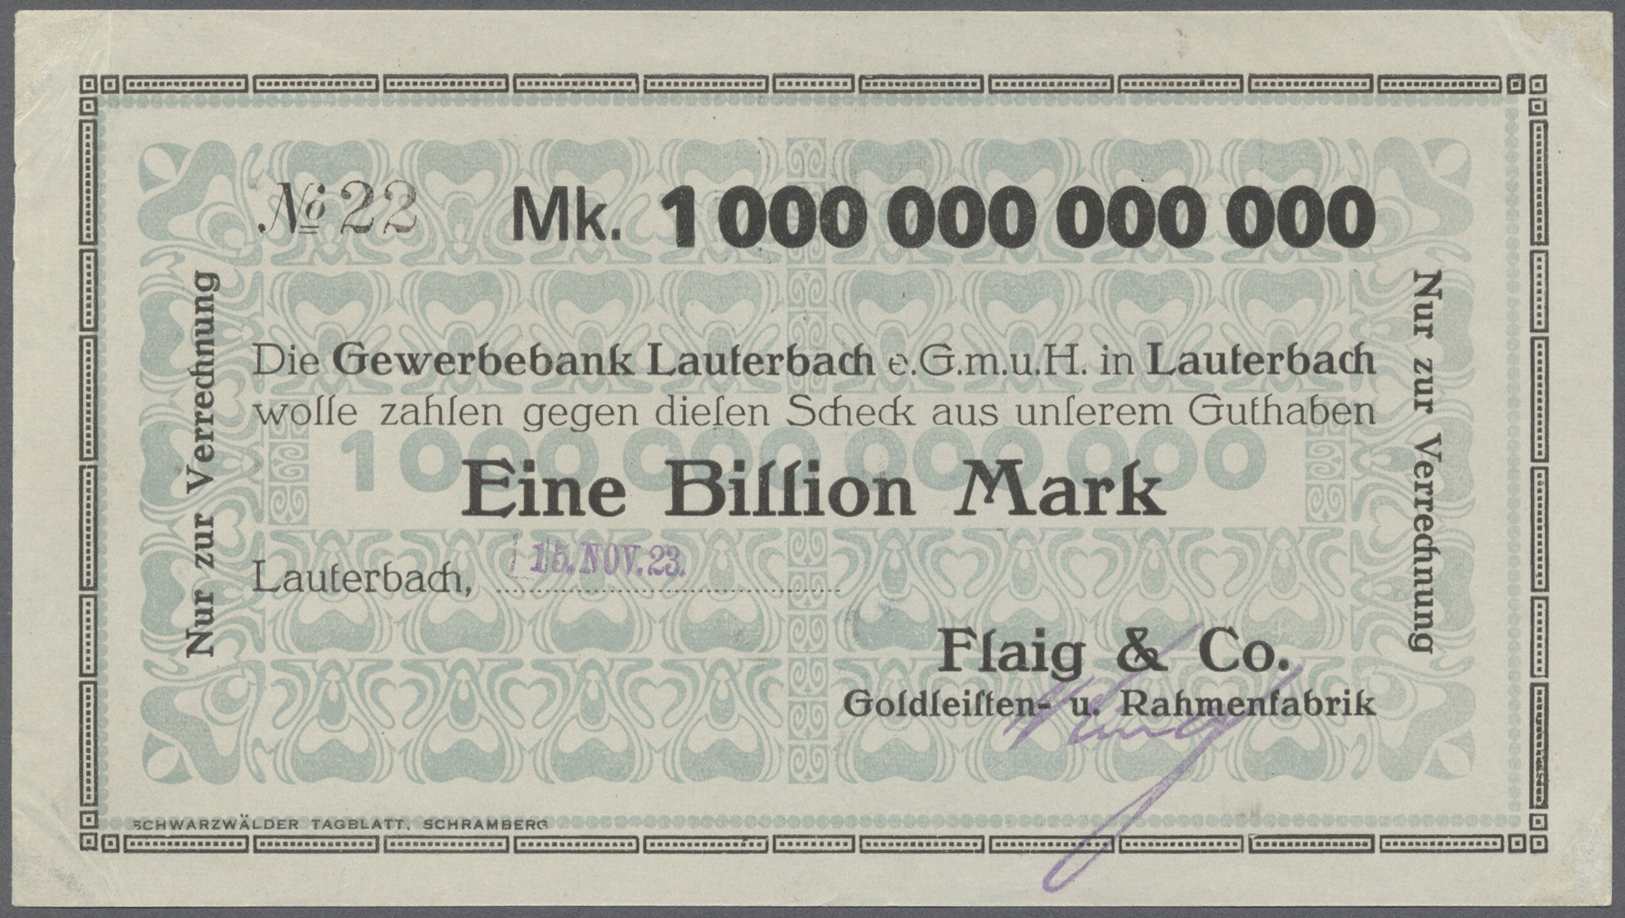 04303 Deutschland - Notgeld - Württemberg: Lauterbach, Flaig & Co., 1 Billion Mark, 15.11.1923, Erh. I-II - Lokale Ausgaben